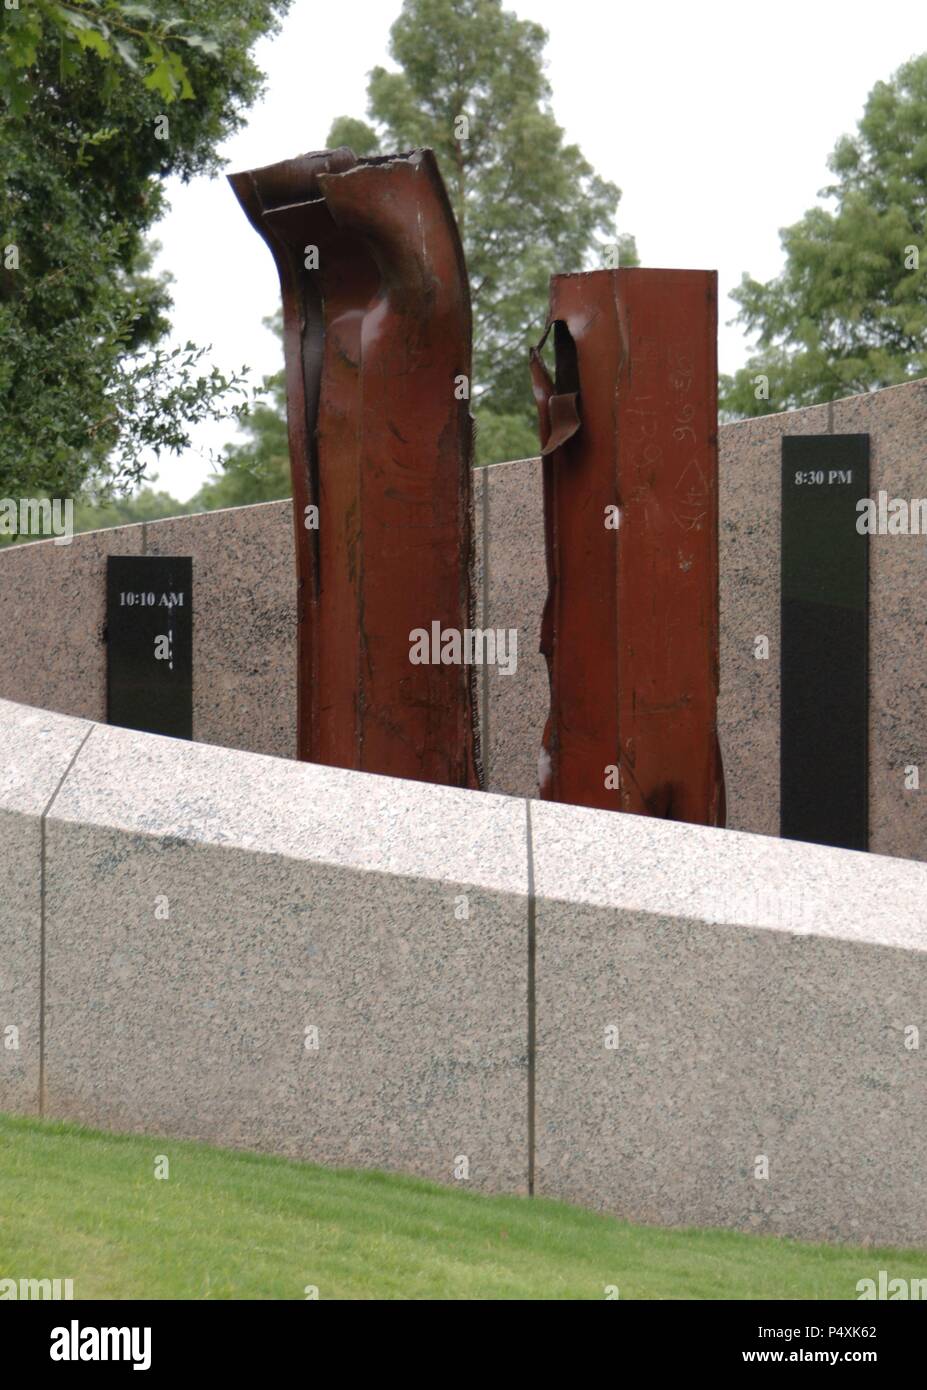 Le mémorial du 11 septembre. L'année 2003. Monument dédié à tous les Texans qui sont morts pendant les attaques terroristes. Conçu par OÕConnell, Robertson et associés d'Austin. Avec deux colonnes d'acier à partir de zéro. Cimetière de l'État du Texas. Austin. United States. Banque D'Images